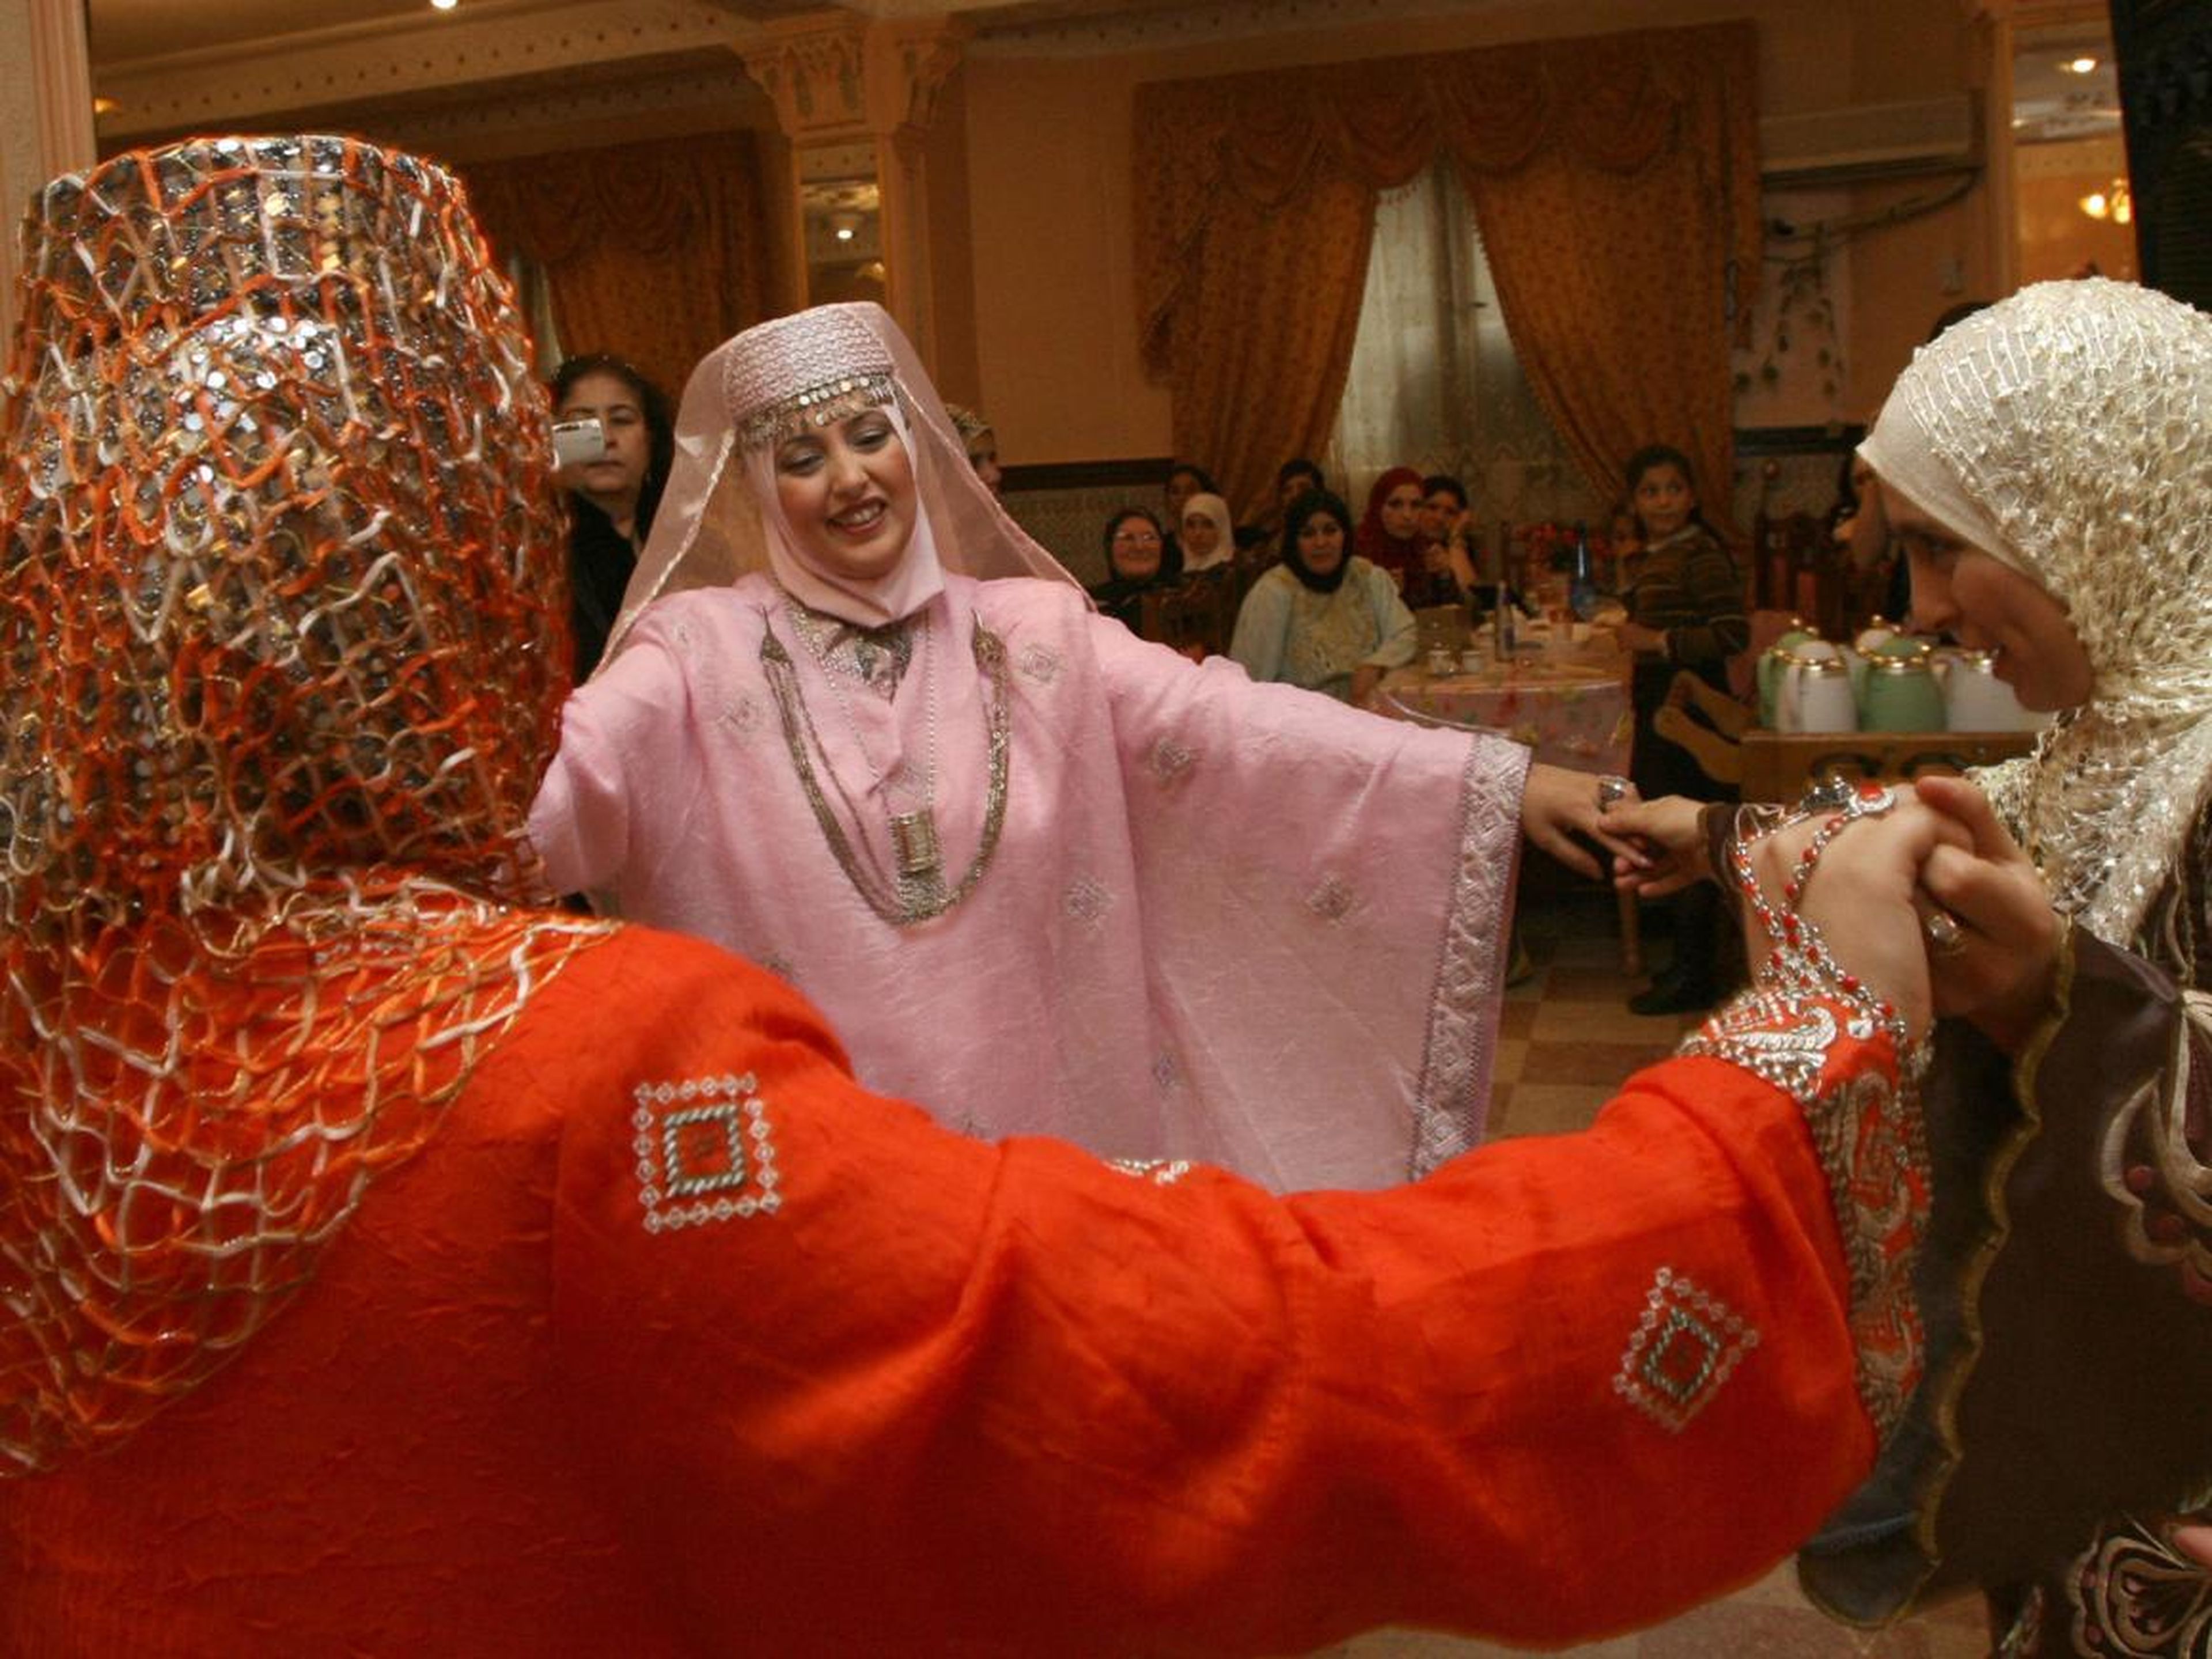 Según la tradición argelina, la novia organiza una fiesta de henna la noche anterior a la boda, en la que familiares y amigos cercanos pintan las manos y los pies de la novia con diseños ornamentales.